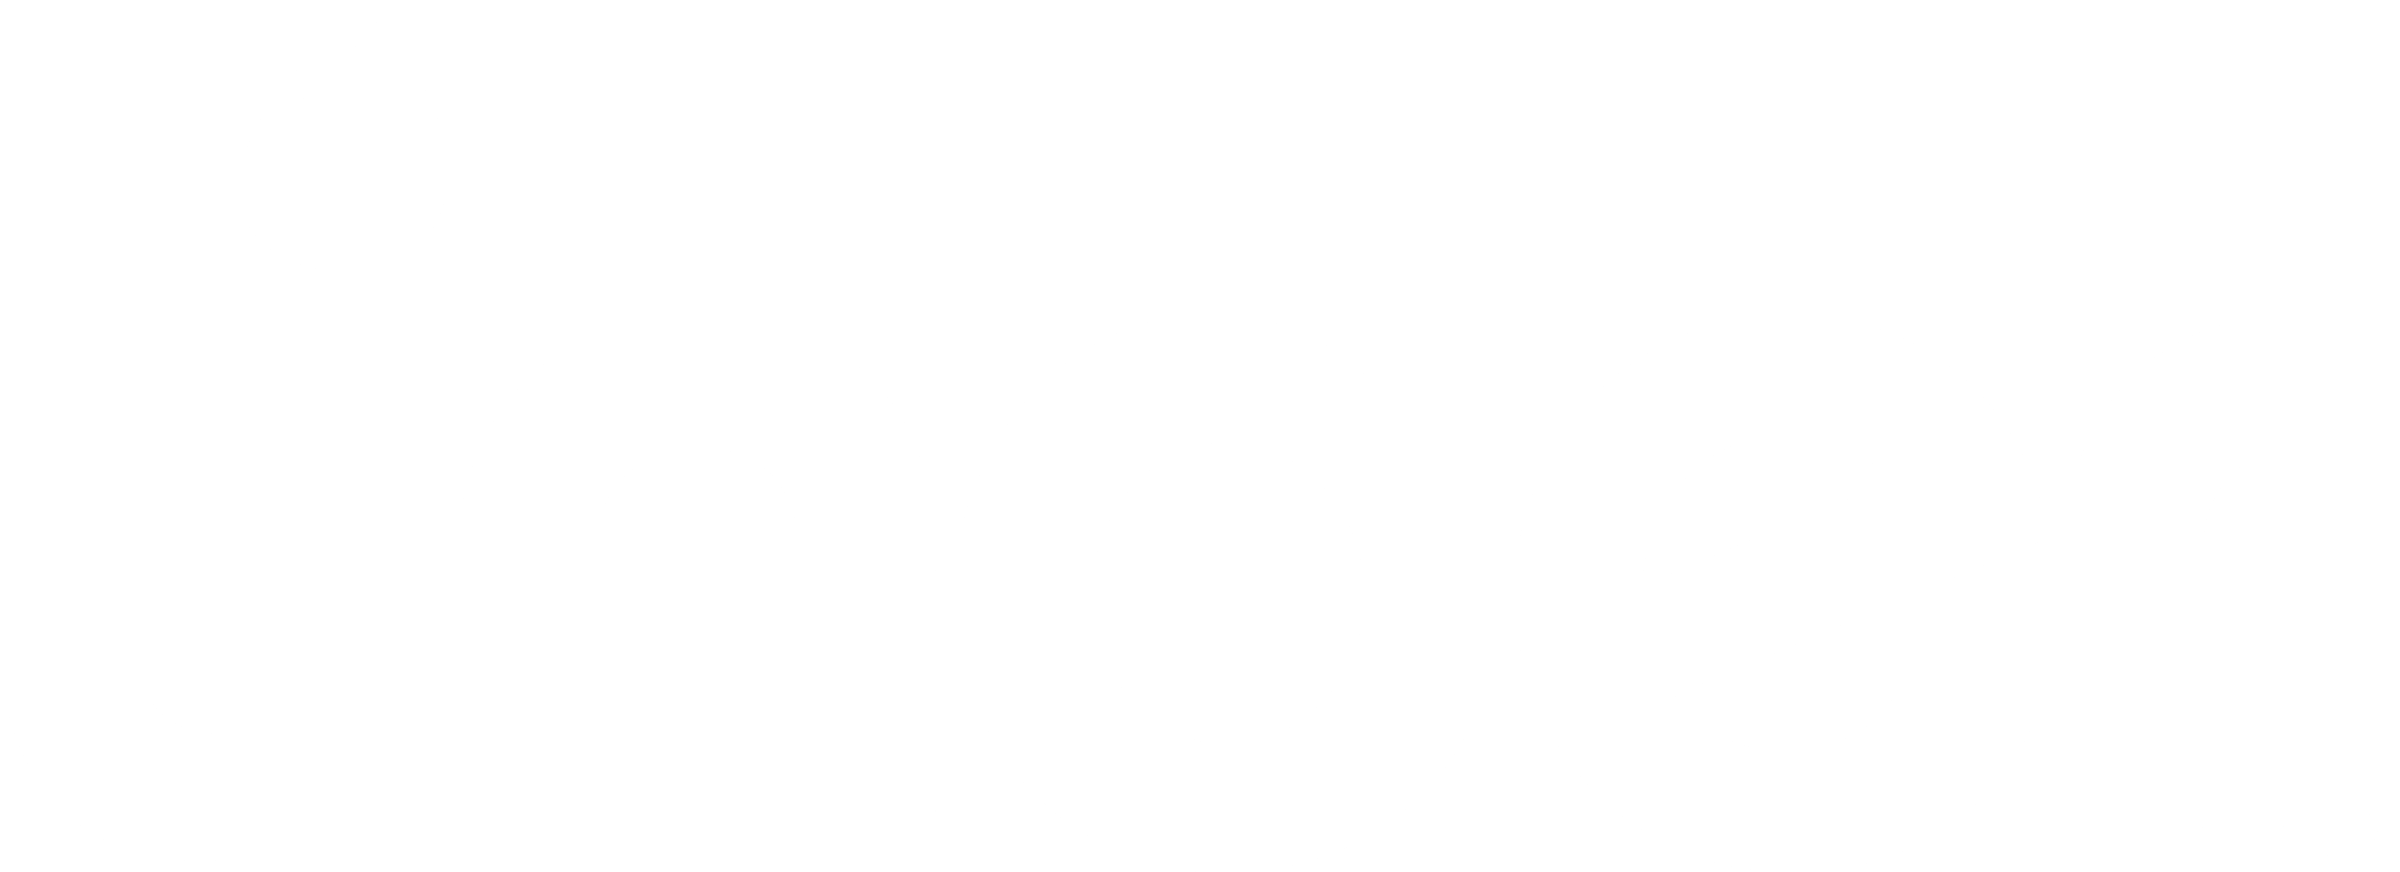 White tinder logo